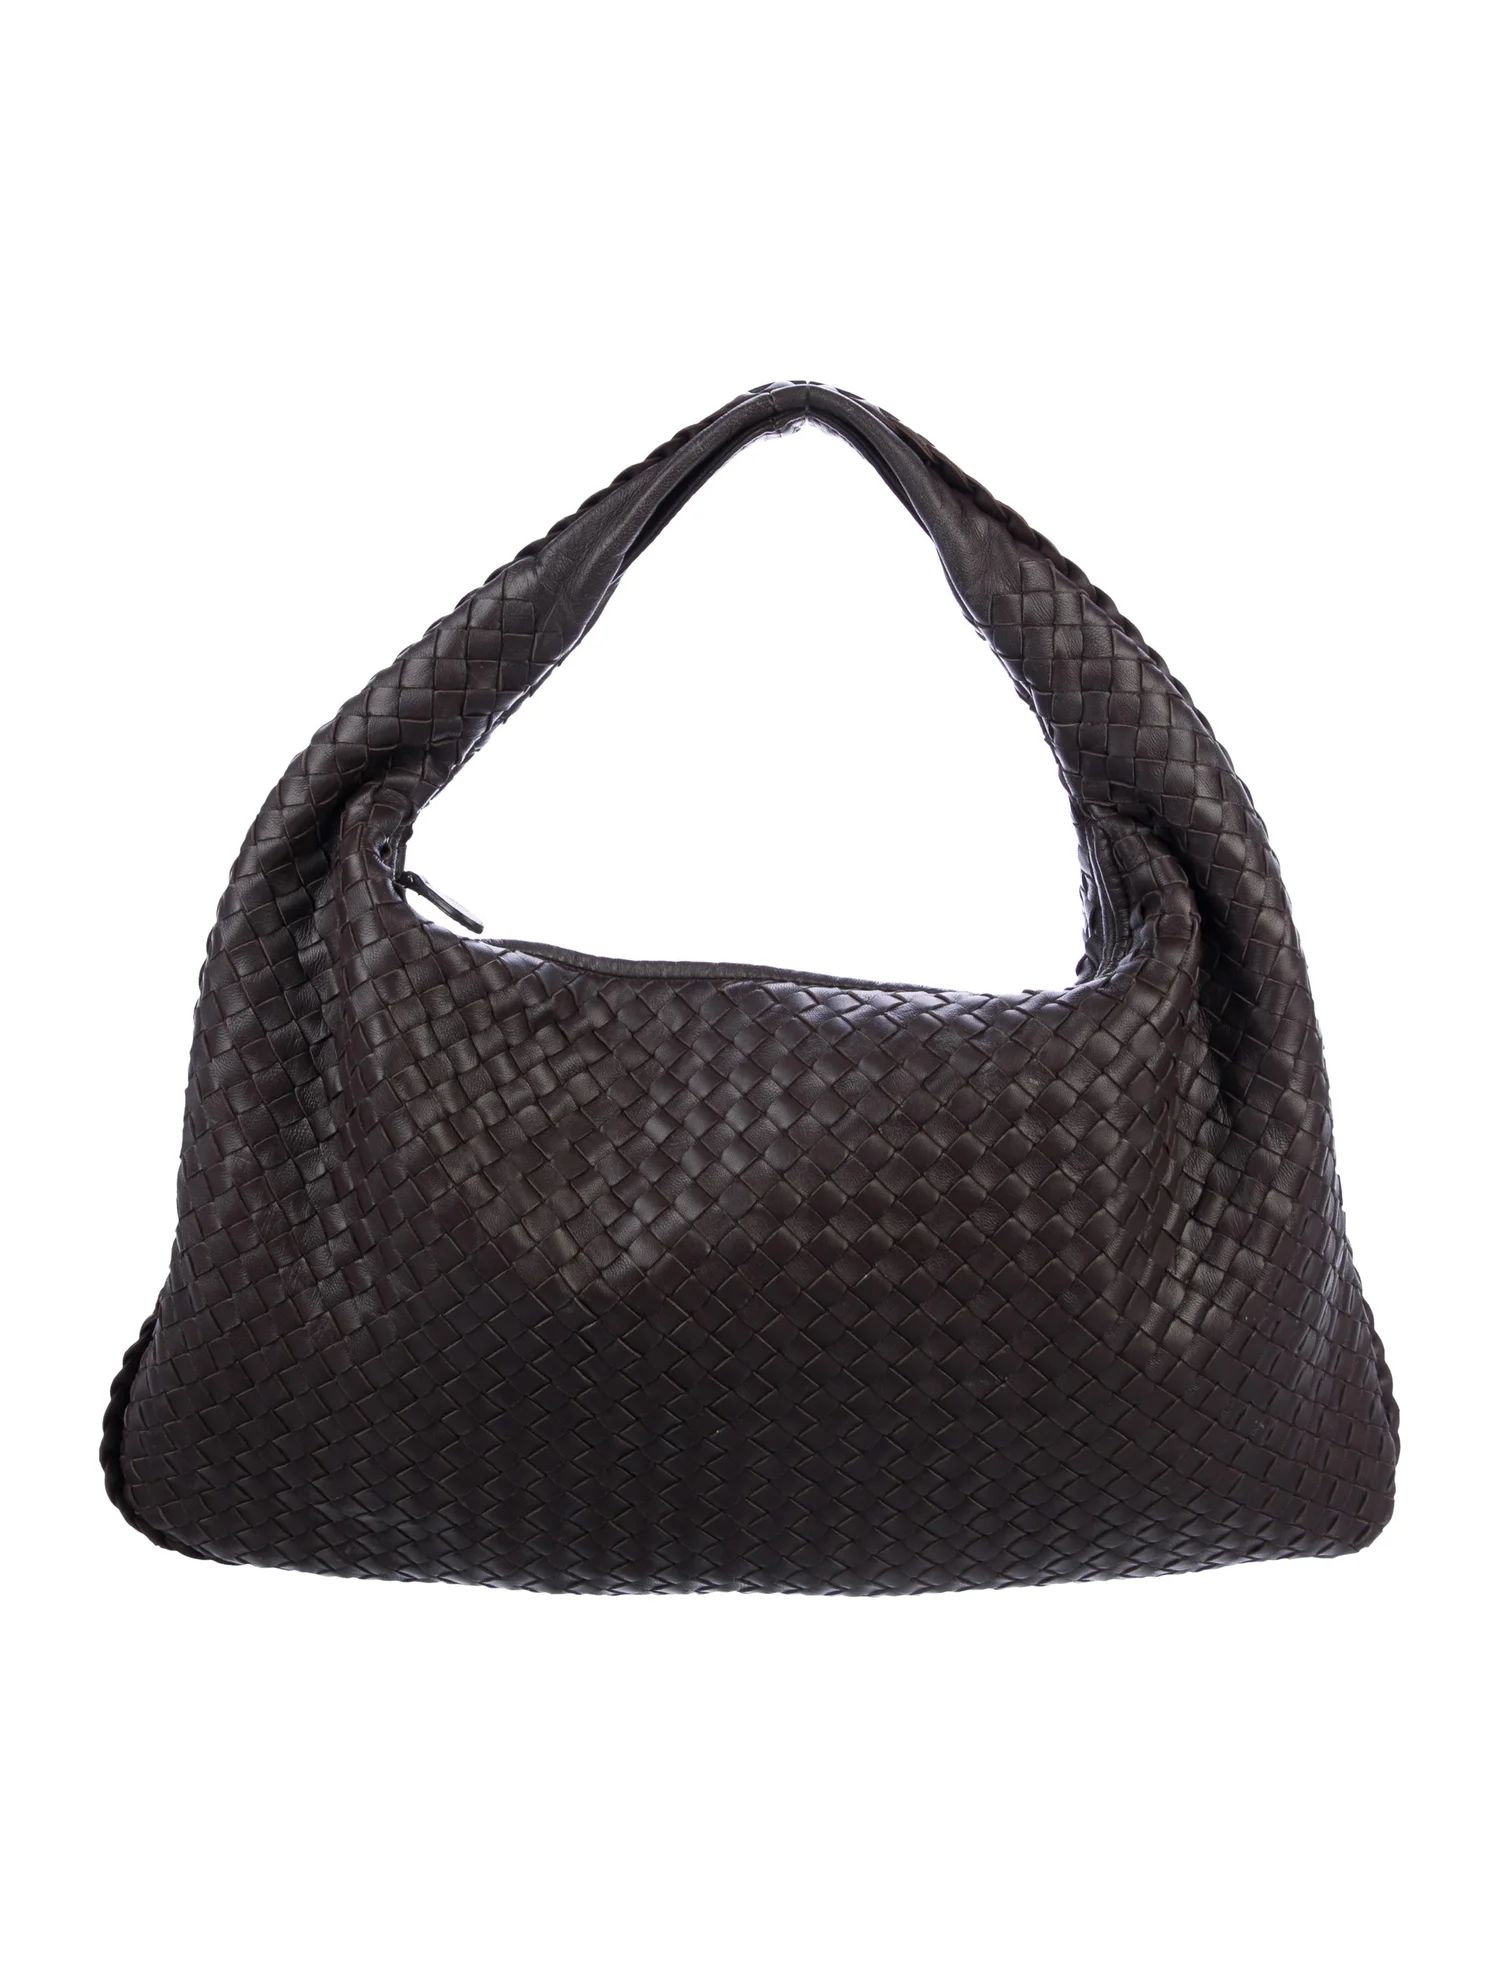 Bottega Veneta Large Intrecciato Veneta Hobo - Handbags -
          BOT80505 | The RealReal | The RealReal